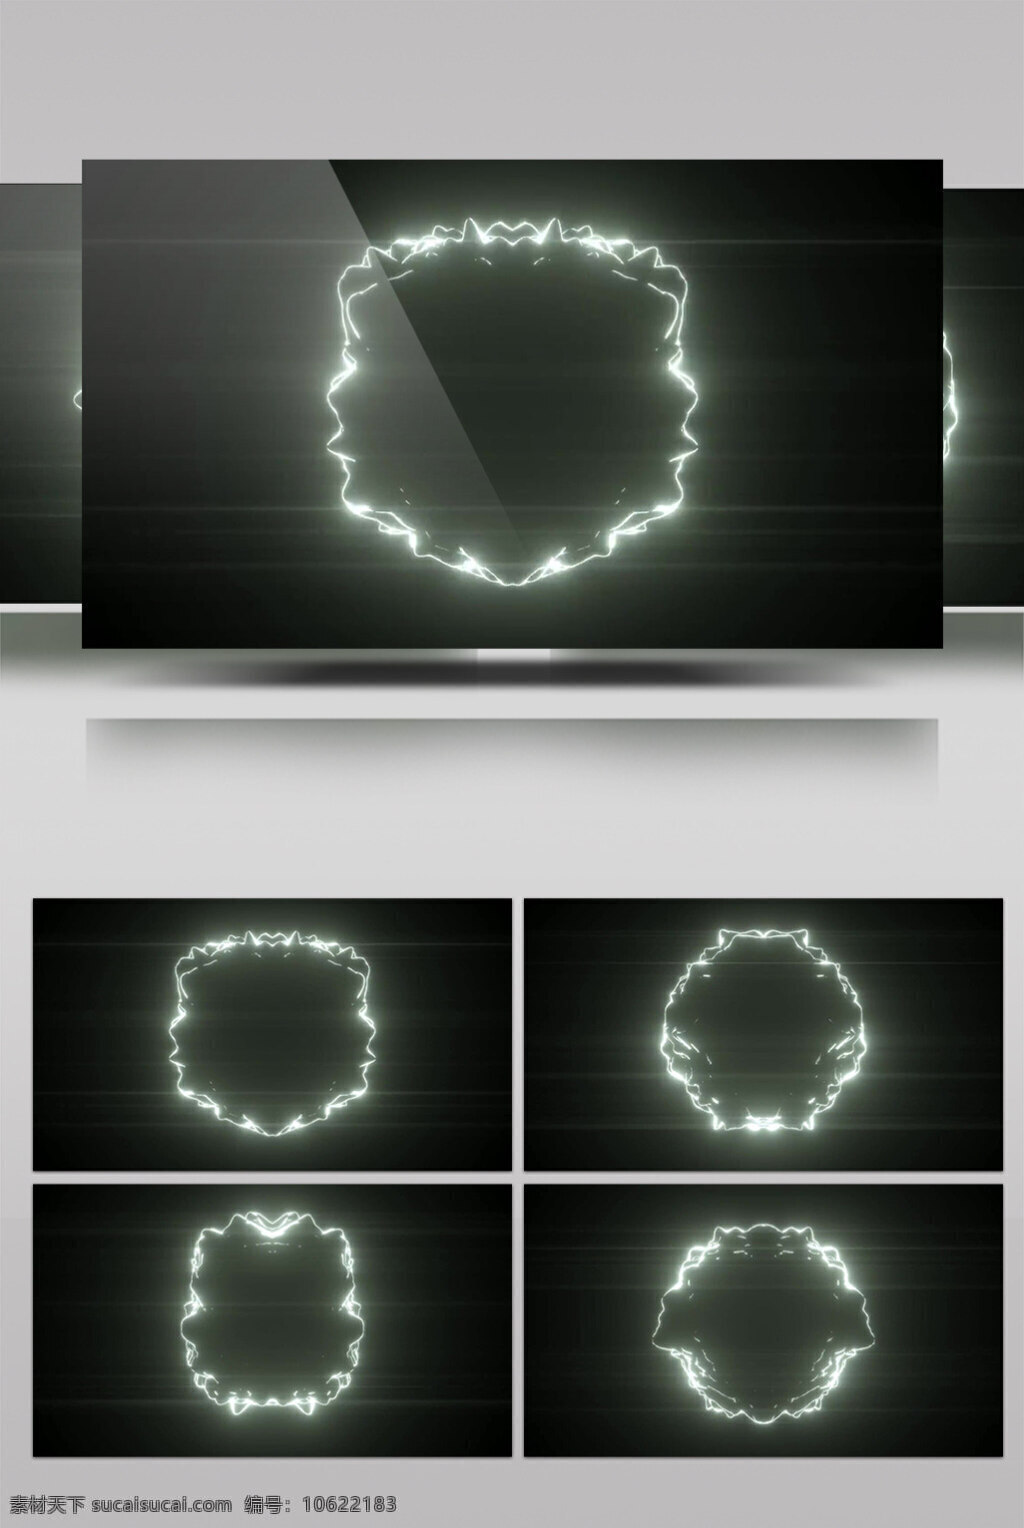 虚幻 圆圈 动态 视频 虚幻圆圈 动态灯光 华丽流转 光芒四射 3d视频素材 特效视频素材